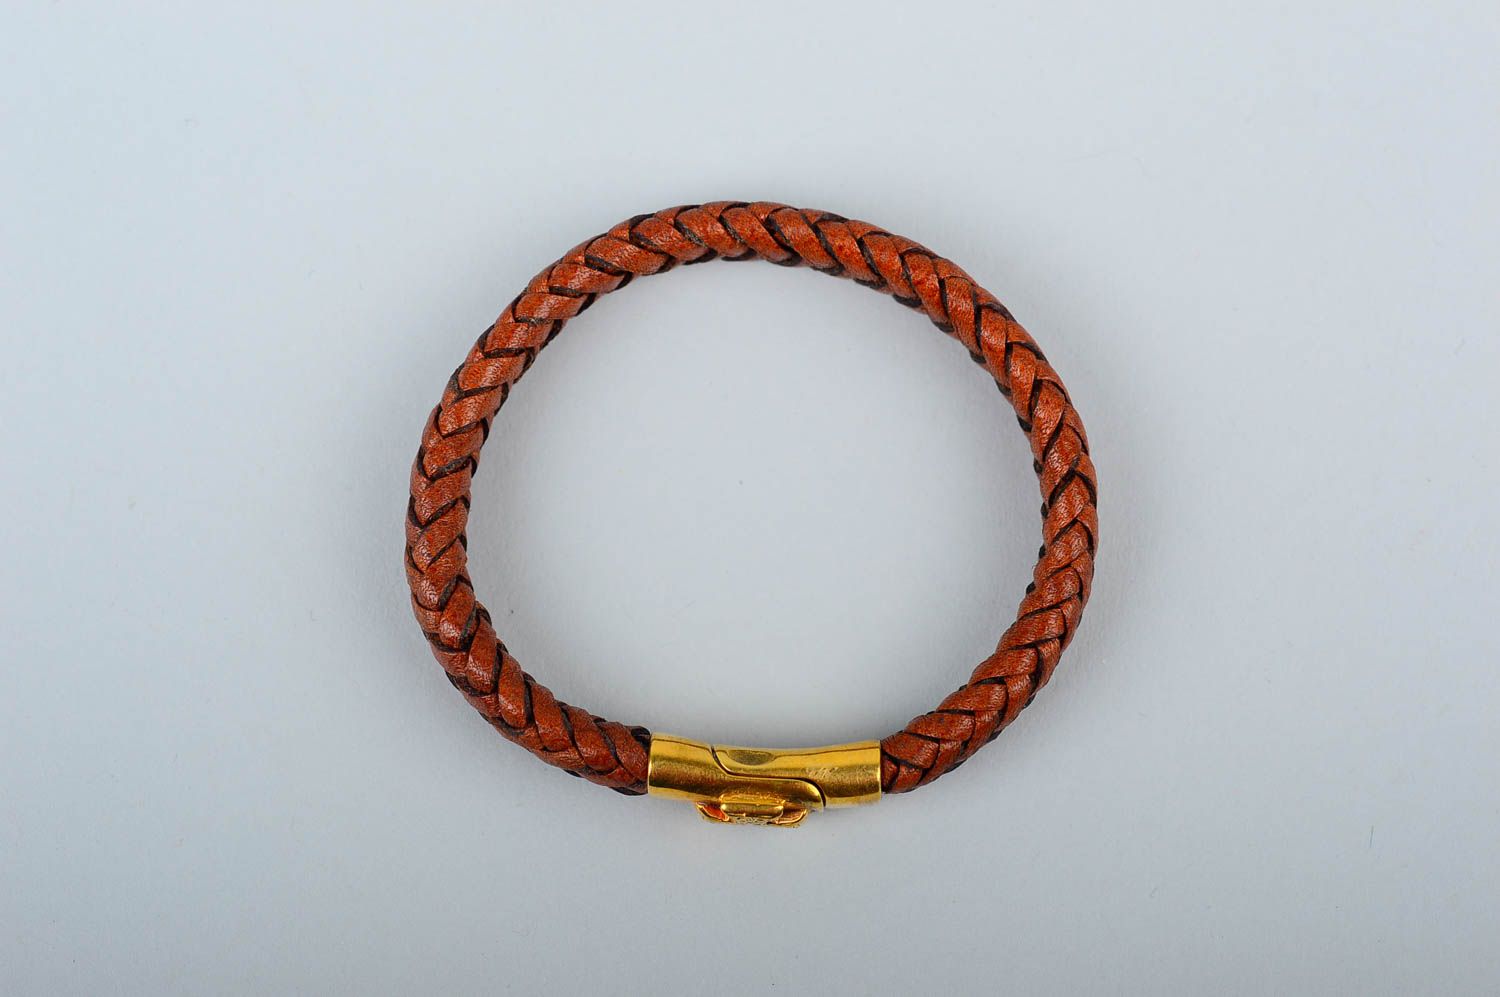 Кожаный браслет хэнд мэйд браслет на руку стильный плетеный украшение из кожи фото 3